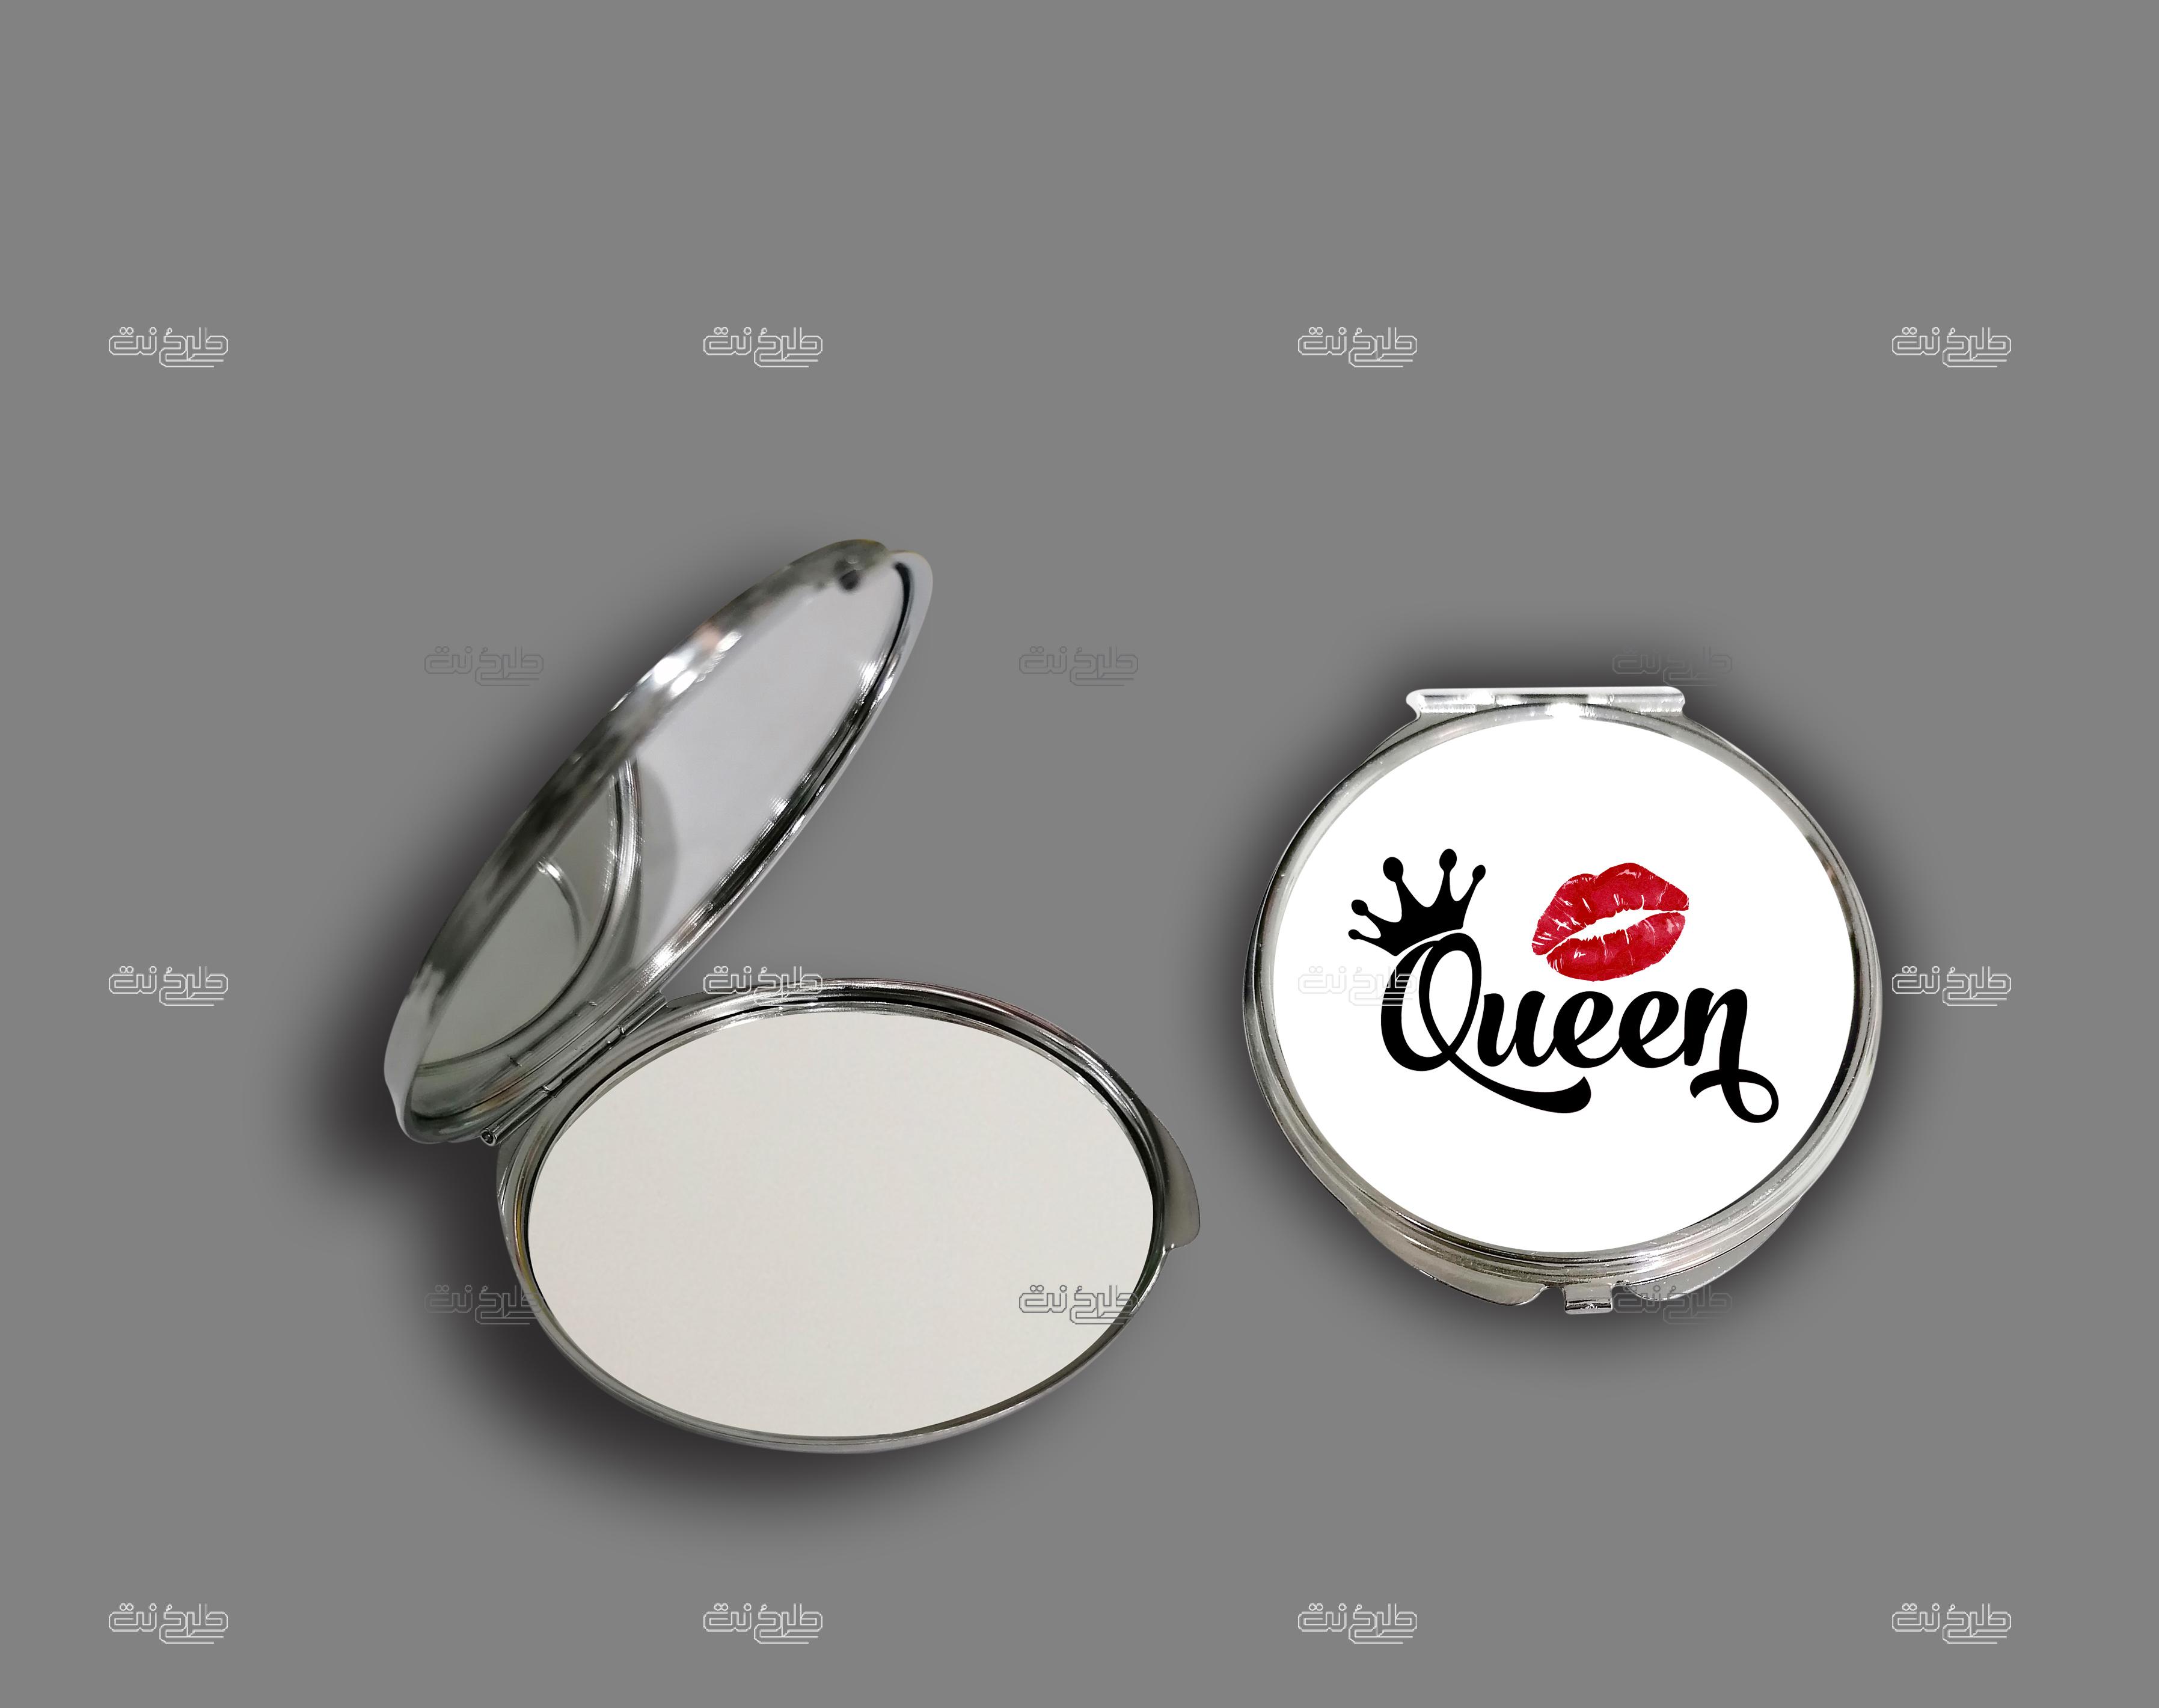 دانلود طرح لایه باز آینه تاج و لب با متن "Queen"